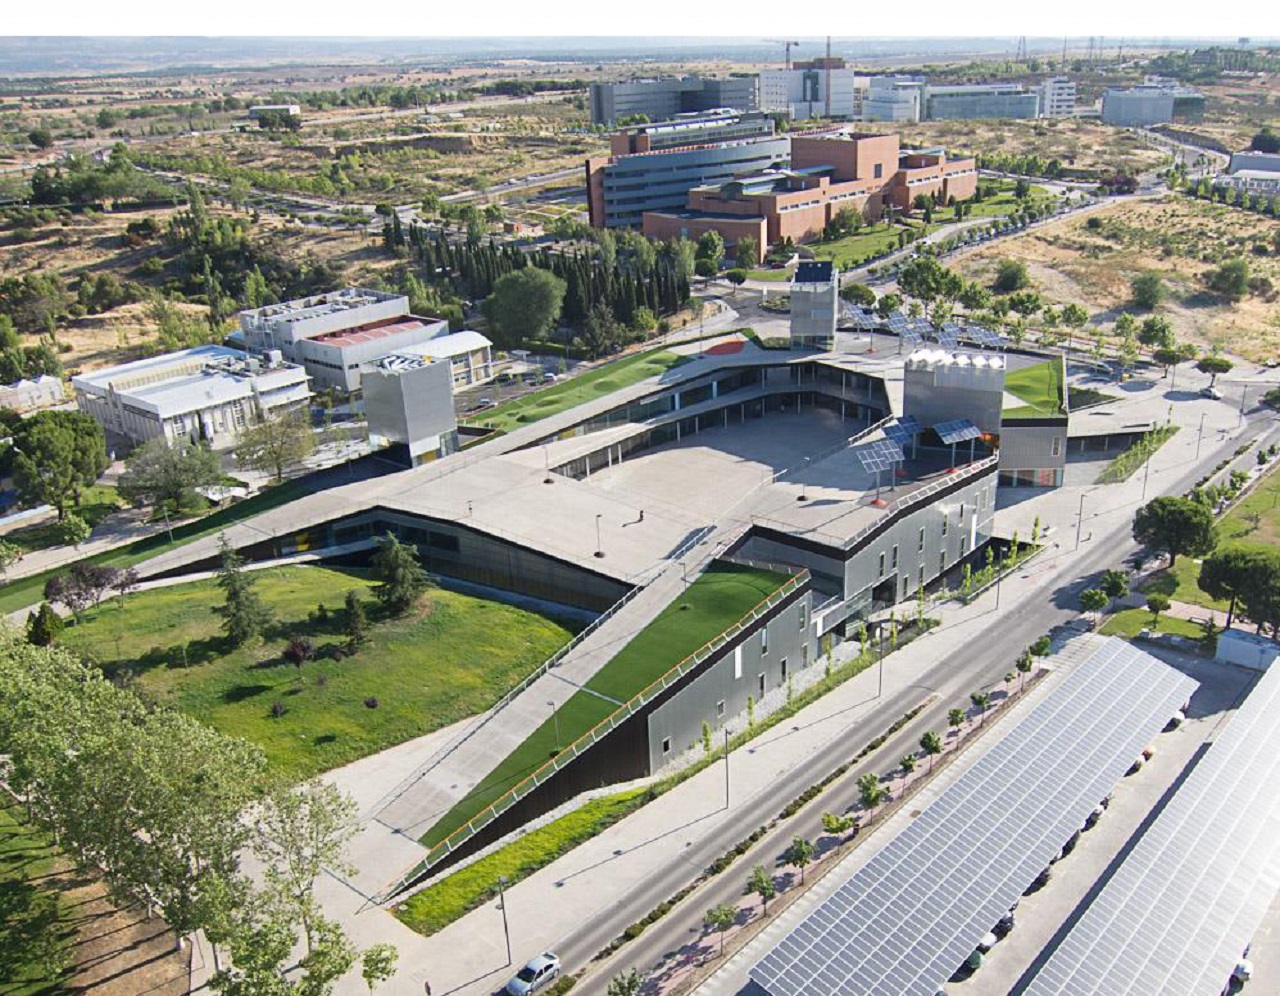 El Campus de Cantoblanco de la Universidad Autónoma de Madrid, a vista de pájaro / UAM